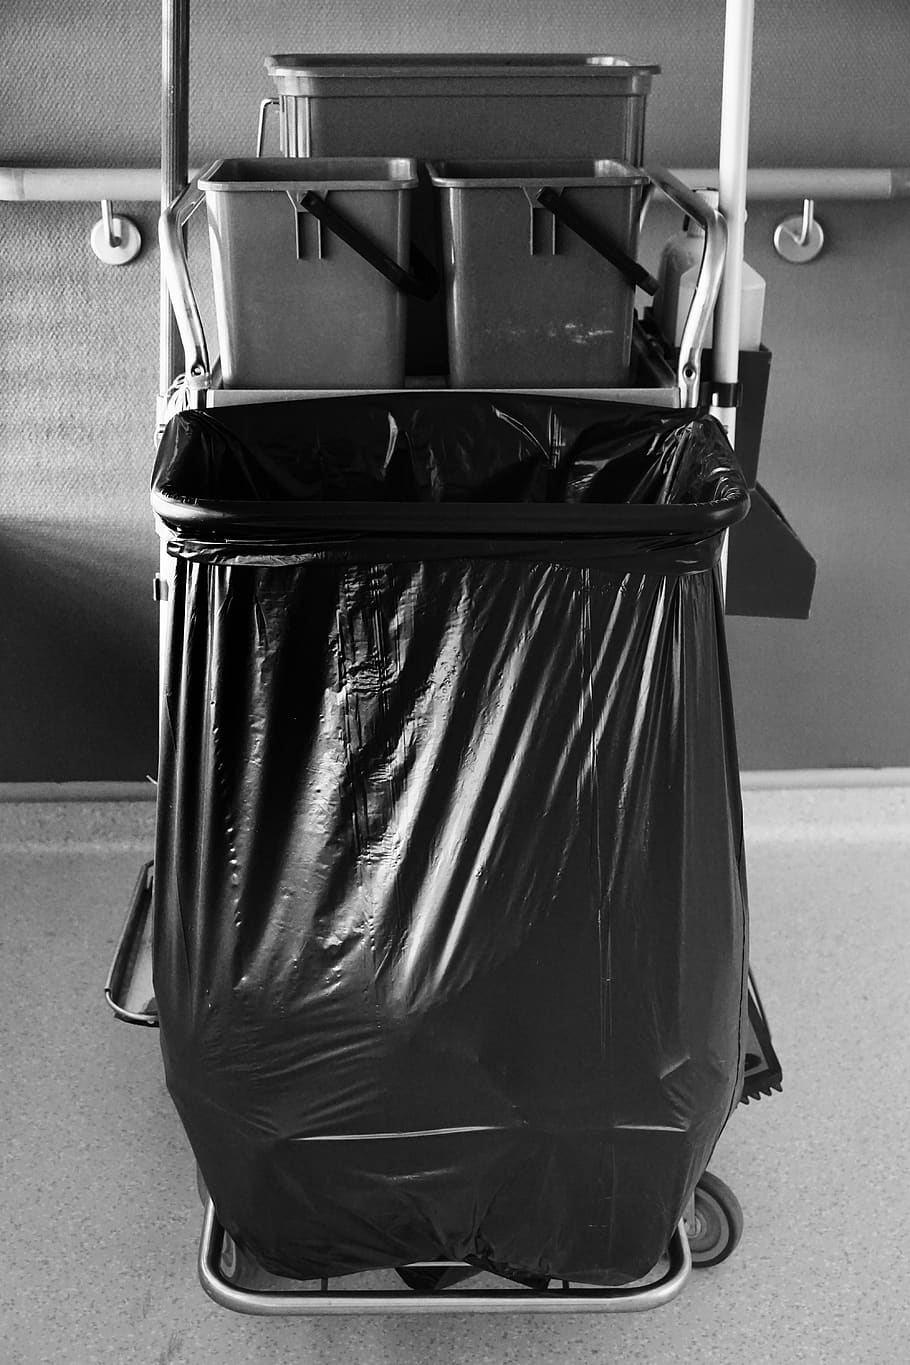 plástico, basura, limpieza, residuos, bolsa, blanco y negro, adentro, contenedor de basura, contenedor de reciclaje, metal